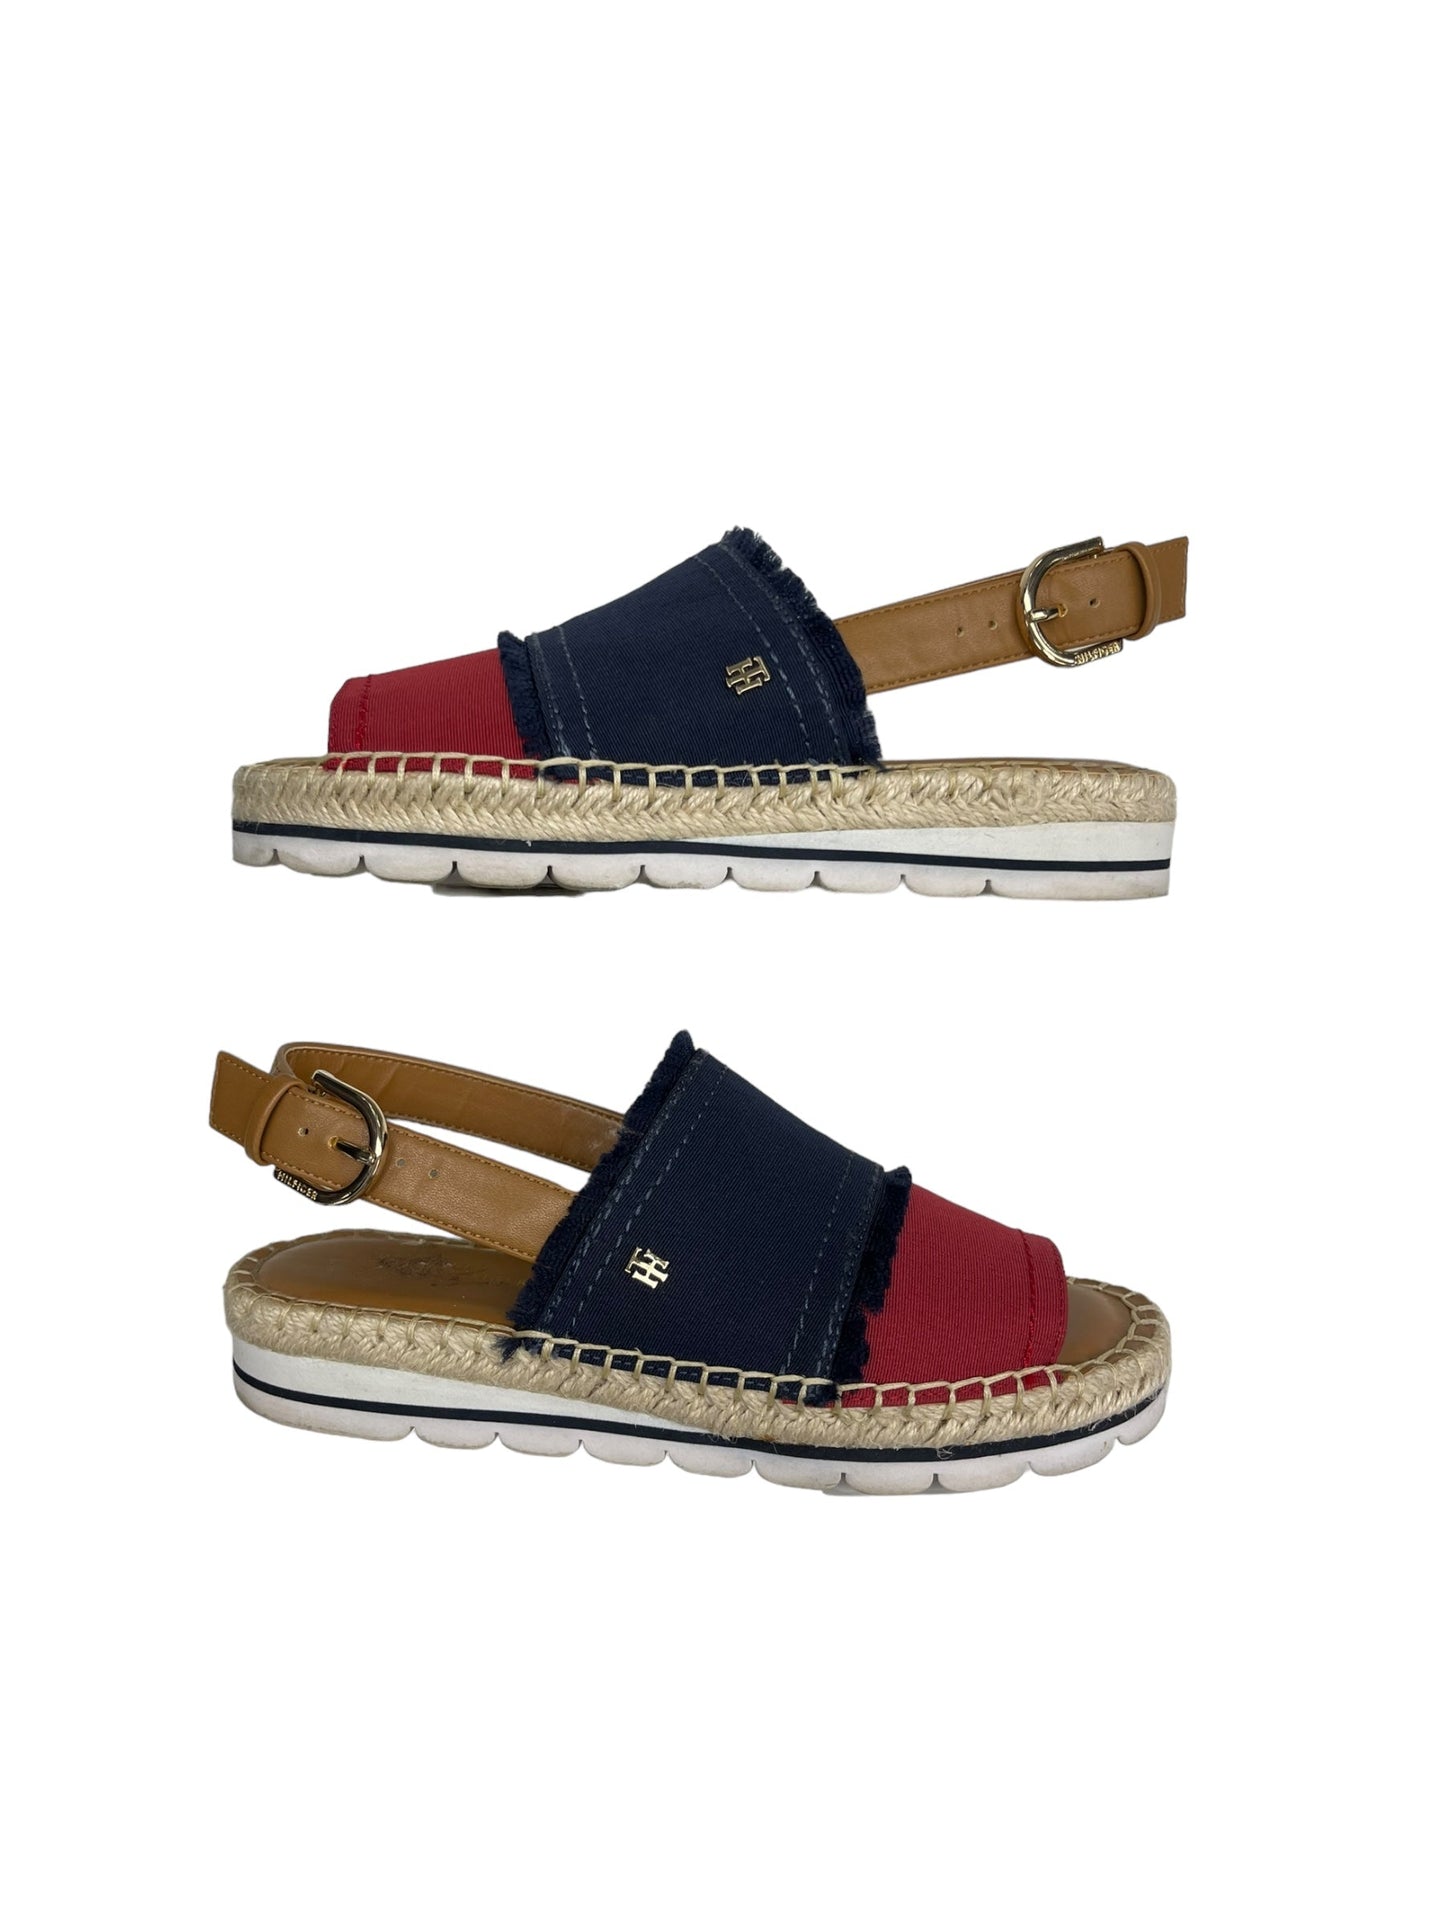 Blue & Red Sandals Designer Tommy Hilfiger, Size 5.5